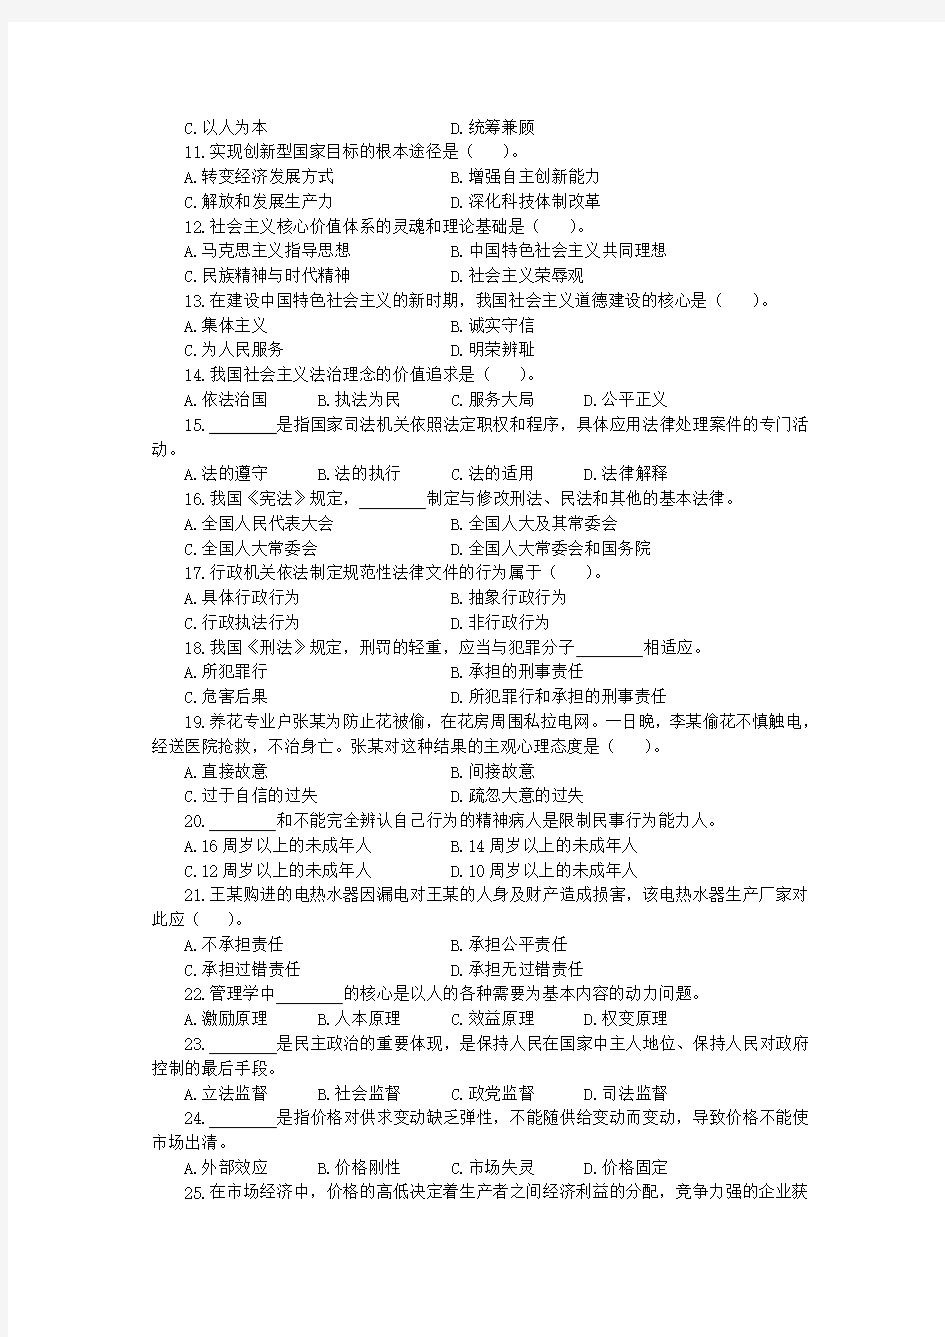 2012年7.14浙江省(统考)温州市事业单位《综合基础知识》试题答案解析